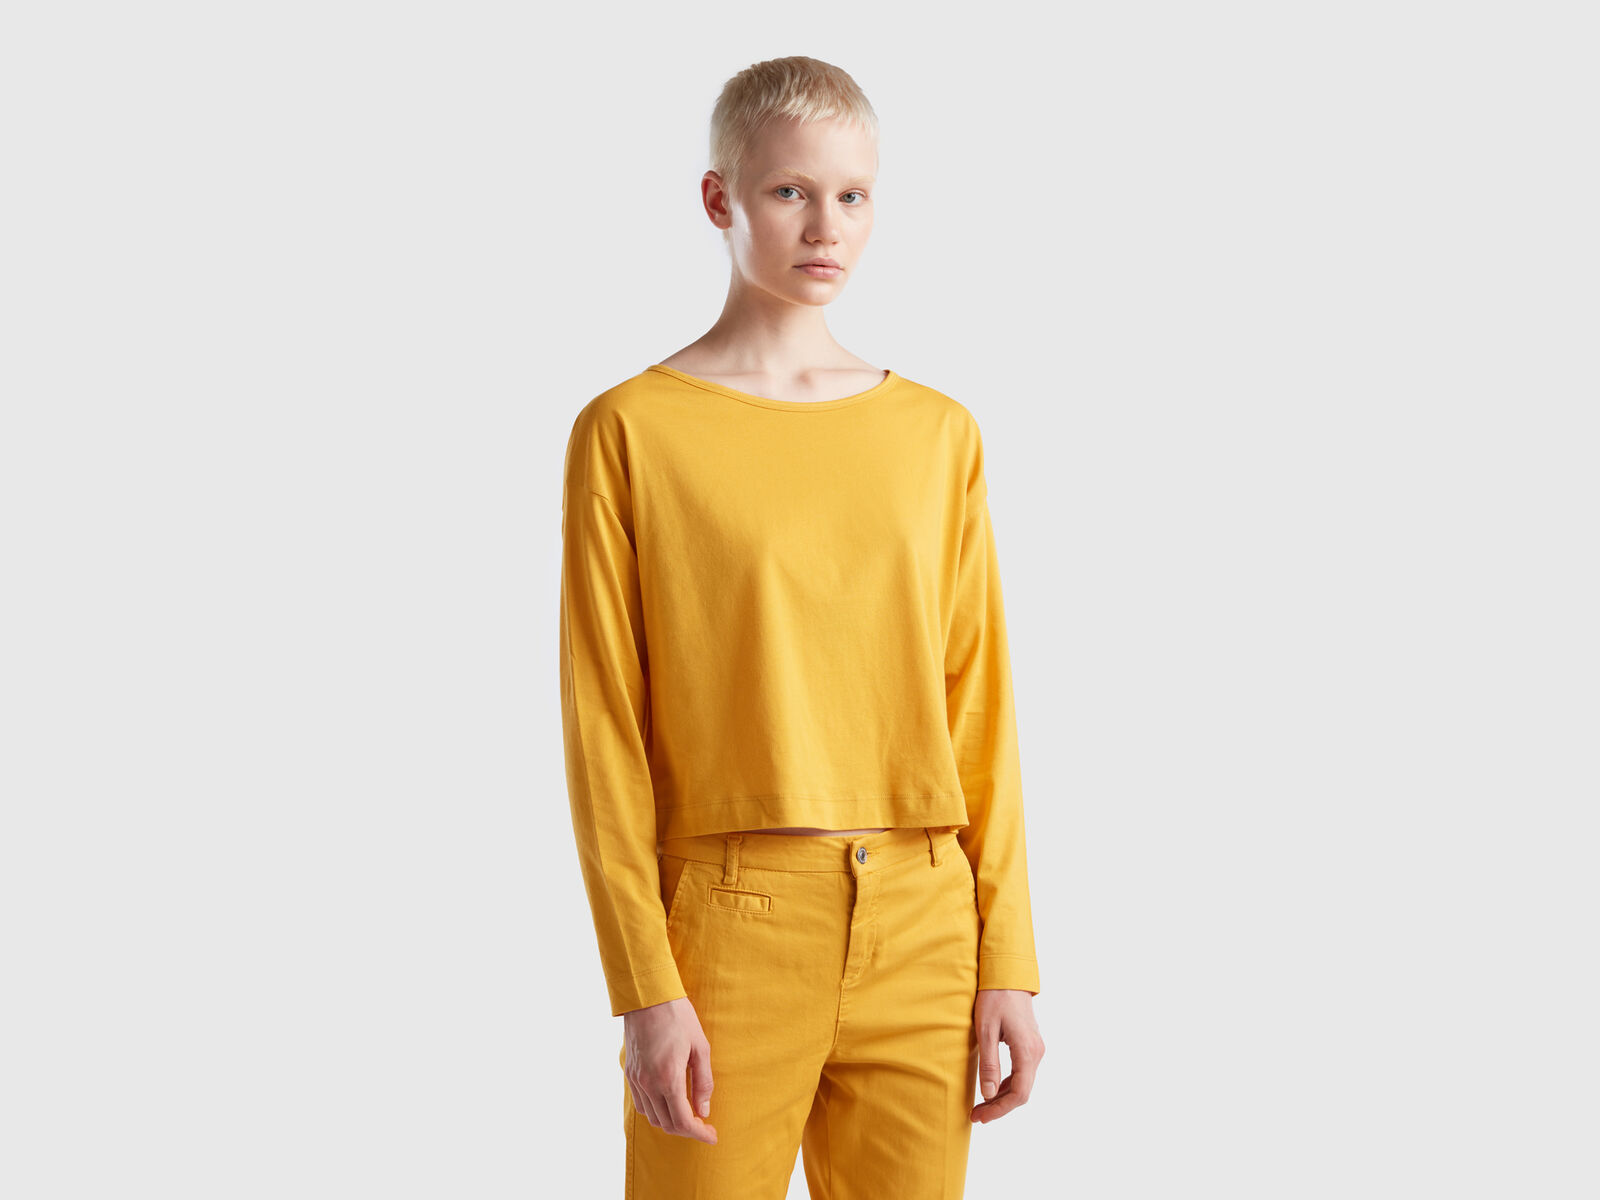 fiber ochre - Yellow | t-shirt Benetton cotton Yellow long